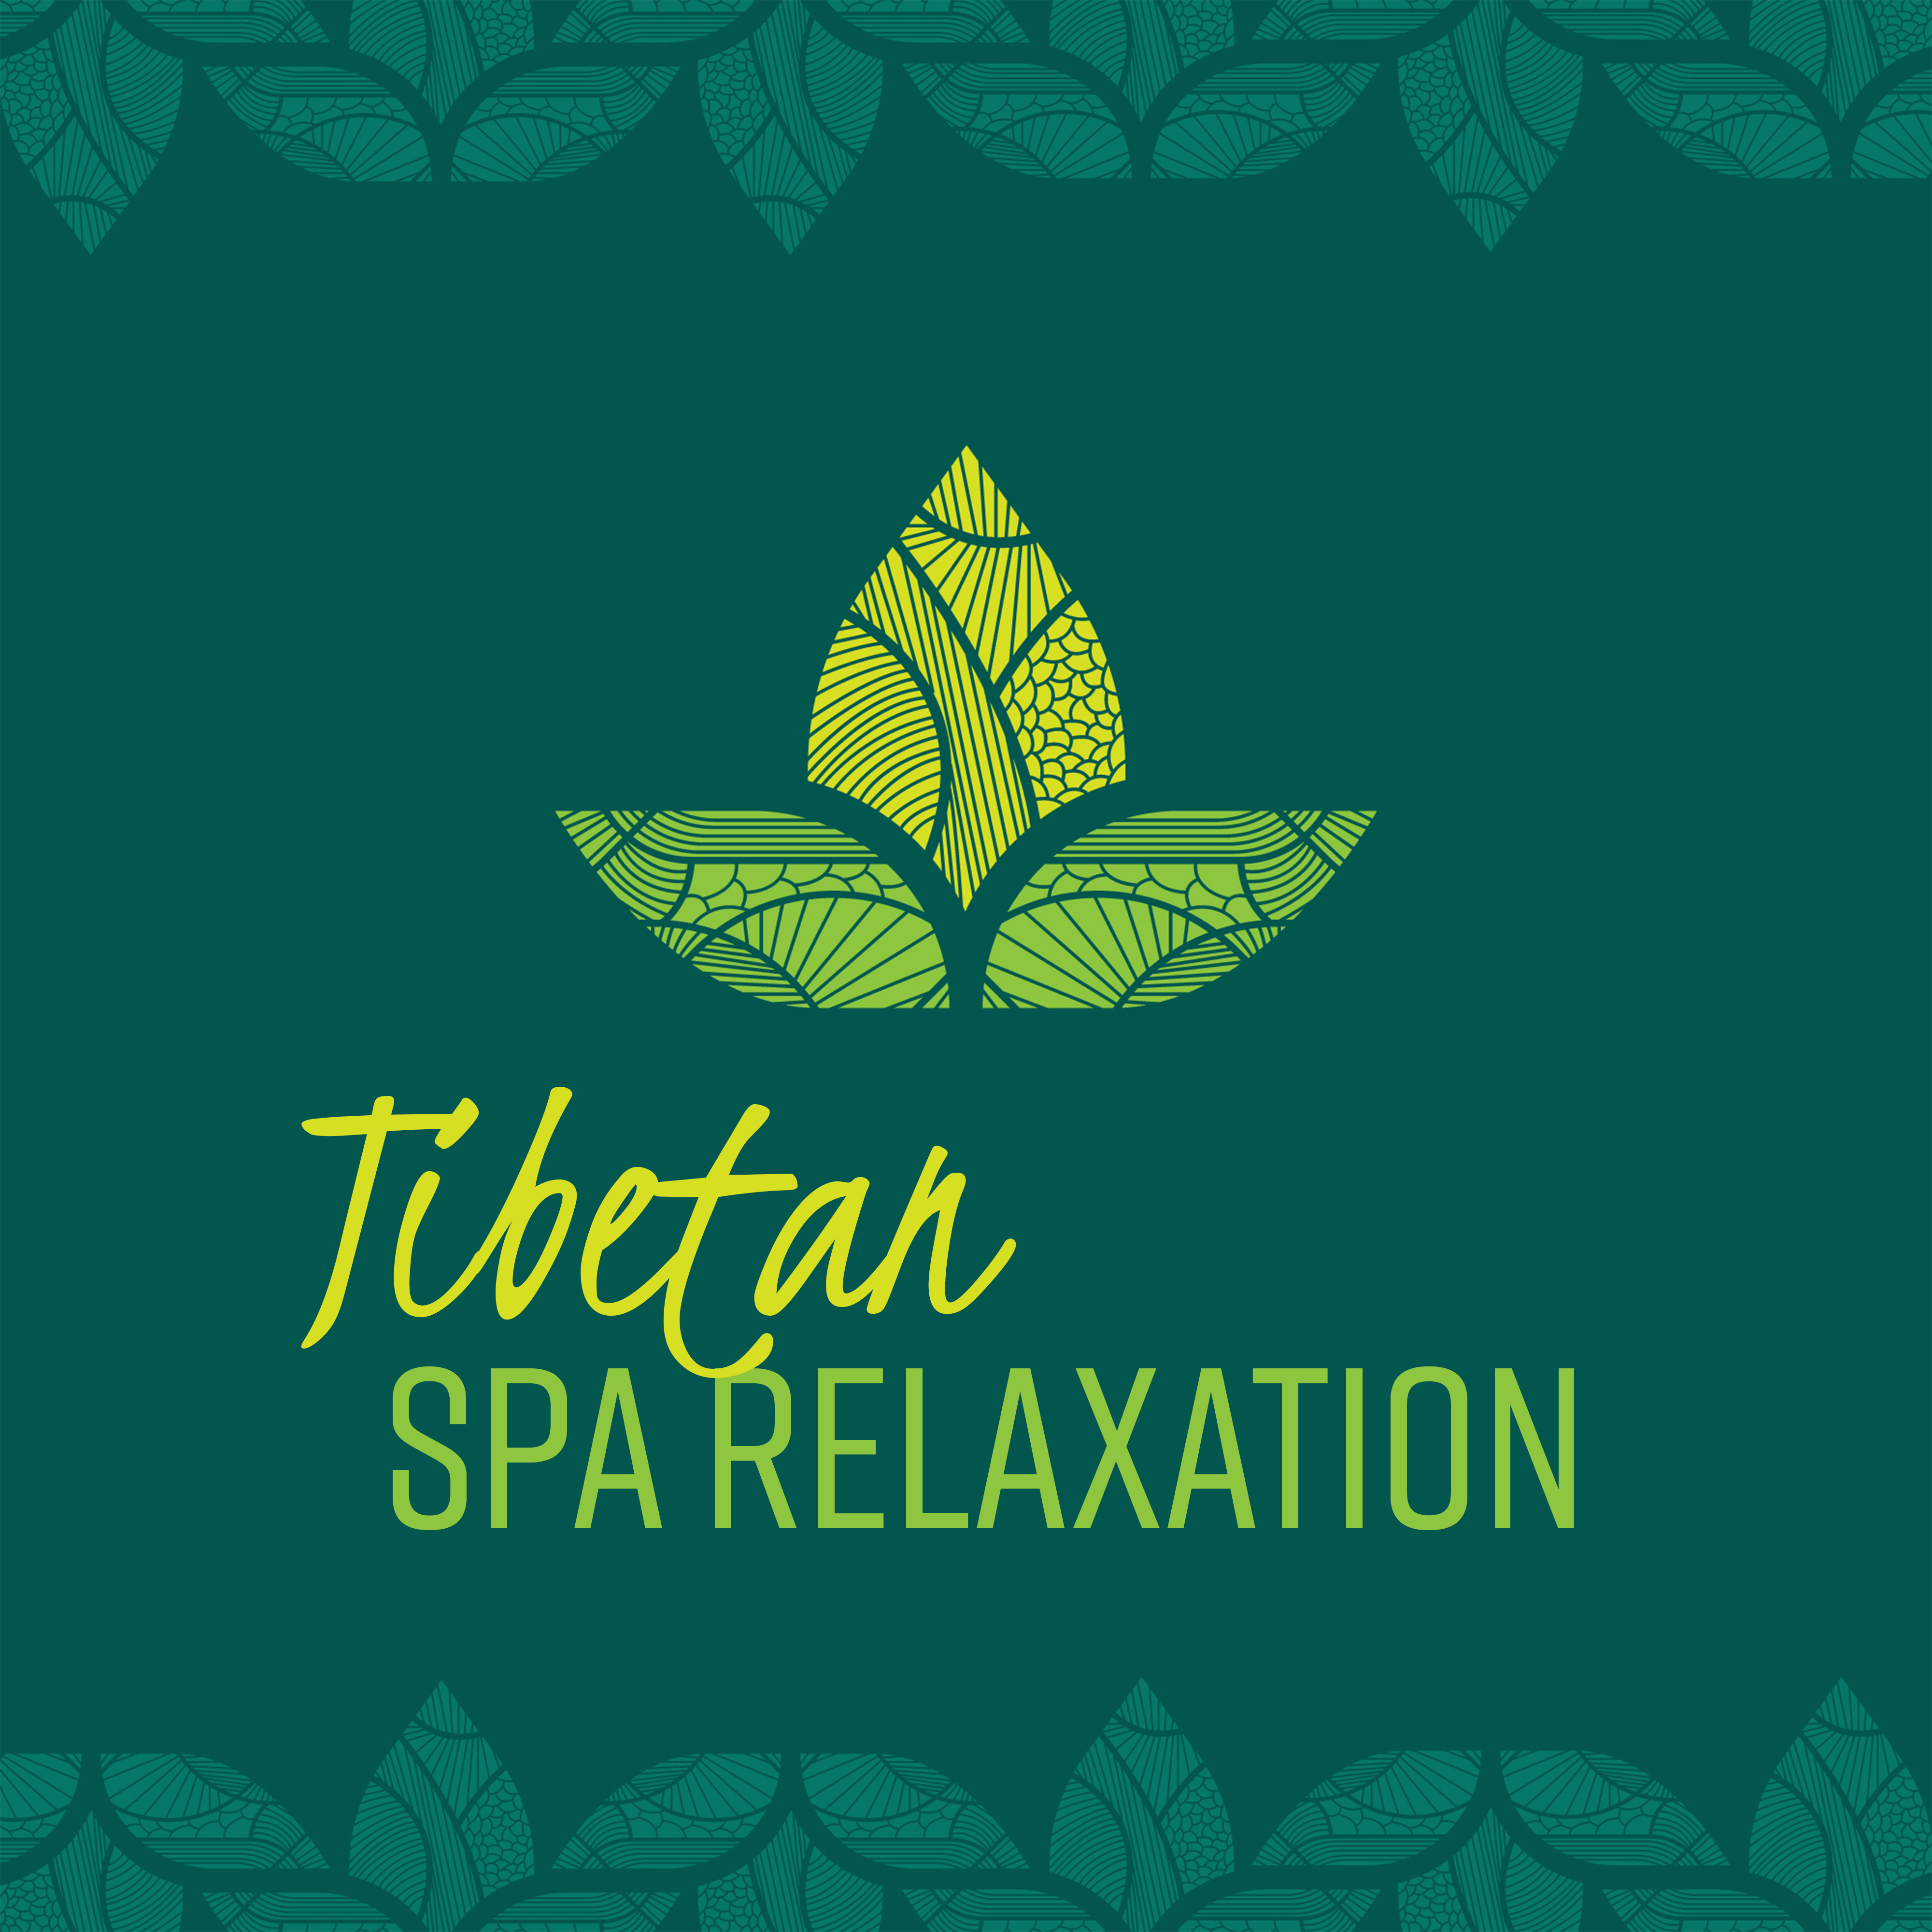 Tibetan Spa Relaxation